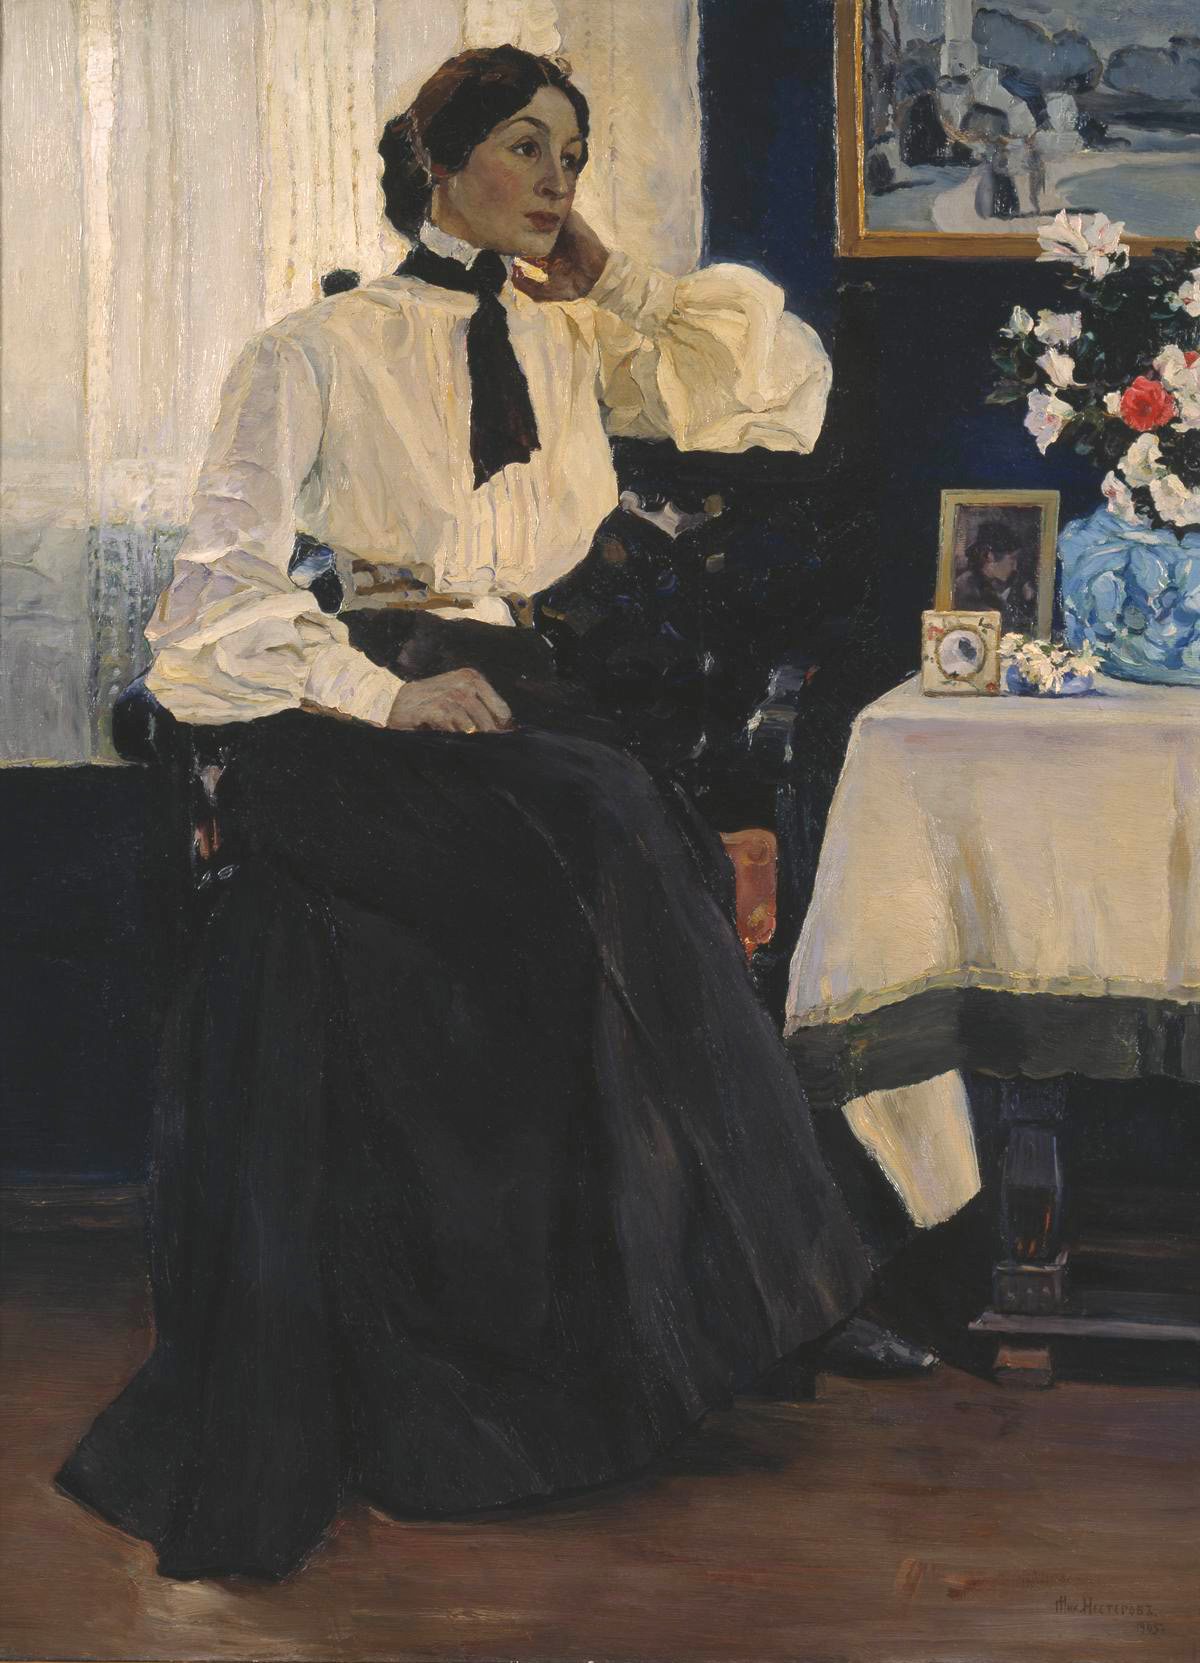 Нестеров М.. Портрет жены, Е.П.Нестеровой. 1905